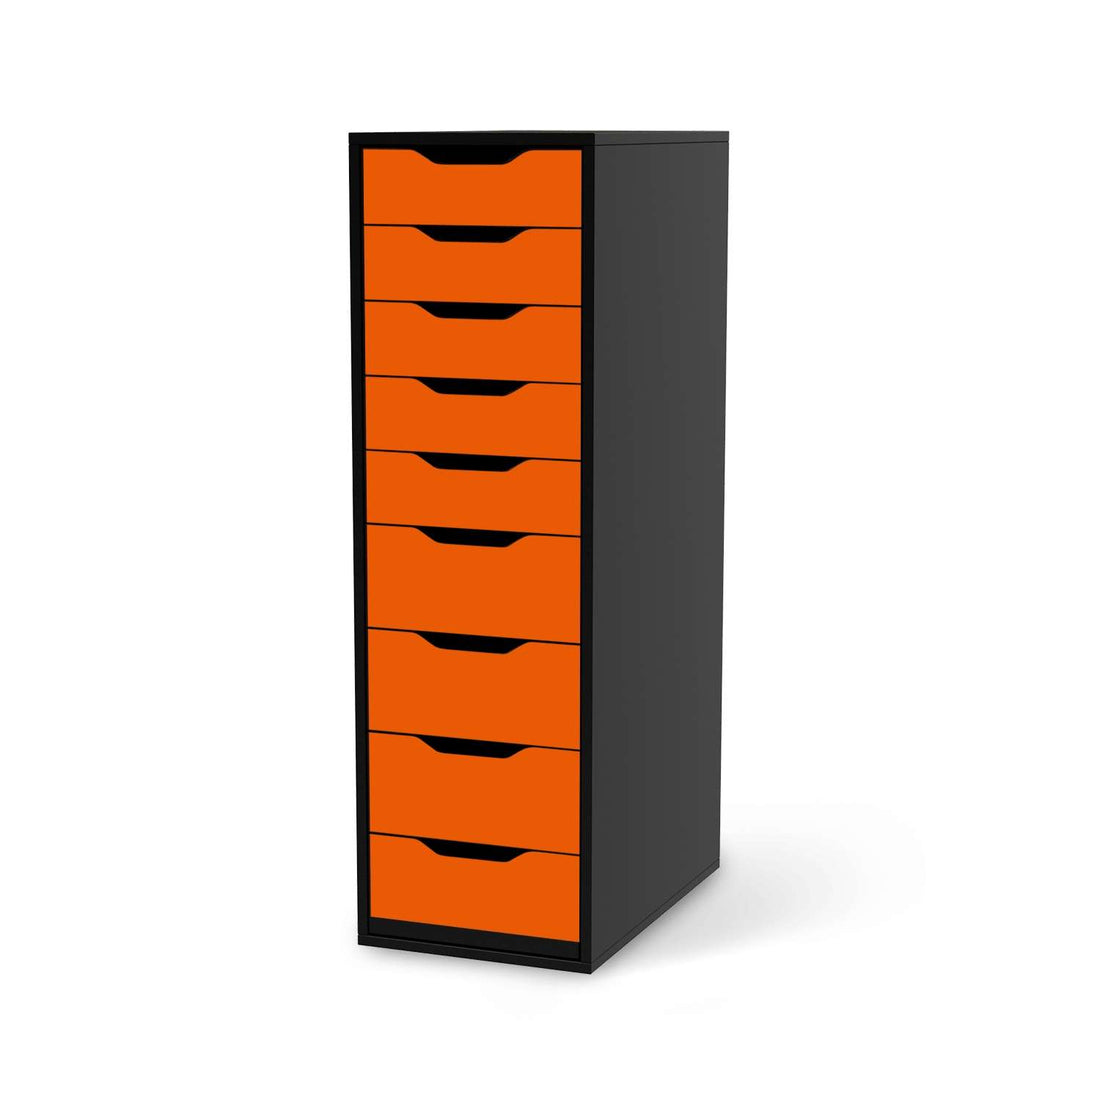 Folie für Möbel Orange Dark - IKEA Alex 9 Schubladen - schwarz